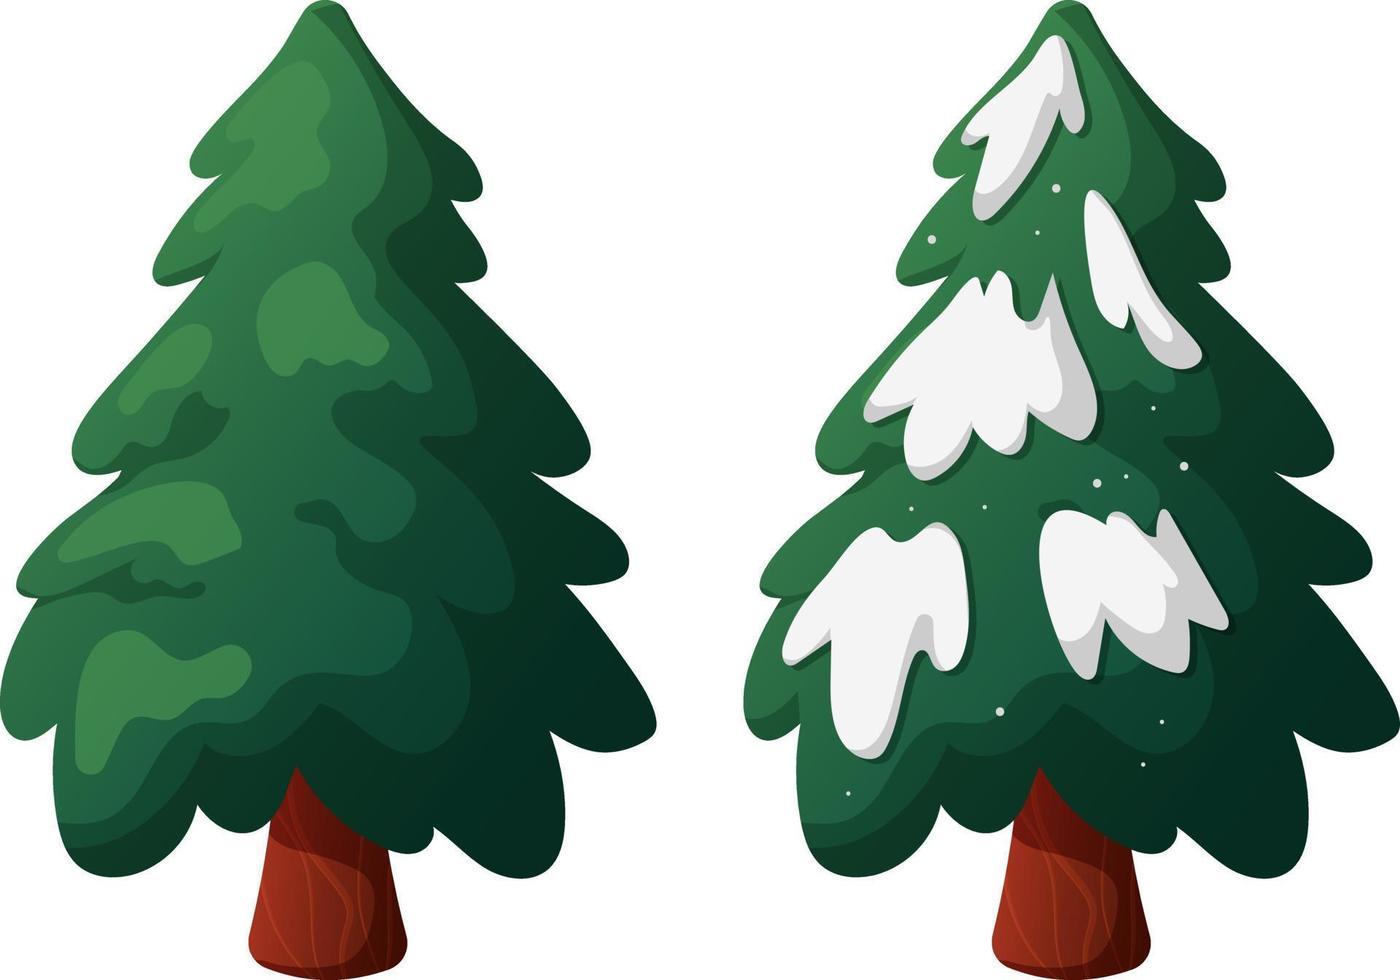 weihnachtsbaum im cartoon-stil mit und ohne schnee auf einem transparenten hintergrund vektor